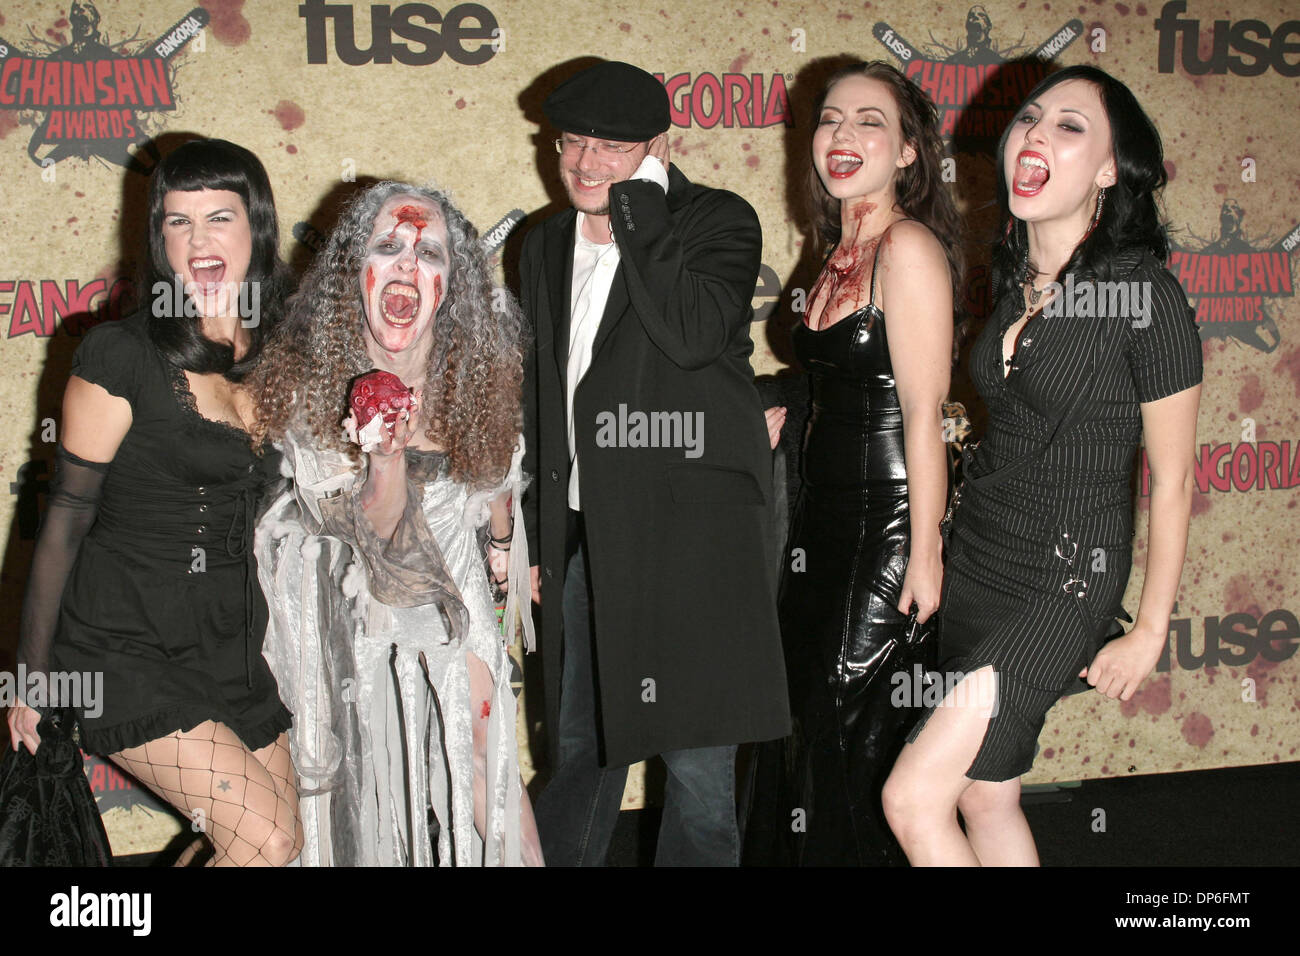 Oct 15, 2006 ; Los Angeles, CA, USA ; Acteurs COURTNEY SALANON, JESSICA  CHISUM ROBENS CHIEKO, MAGALY BELTRAN ET MARIE ANNE SILVA au fusible  Fangoria Chainsaw Awards - Arrivals tenue à l'Orpheum